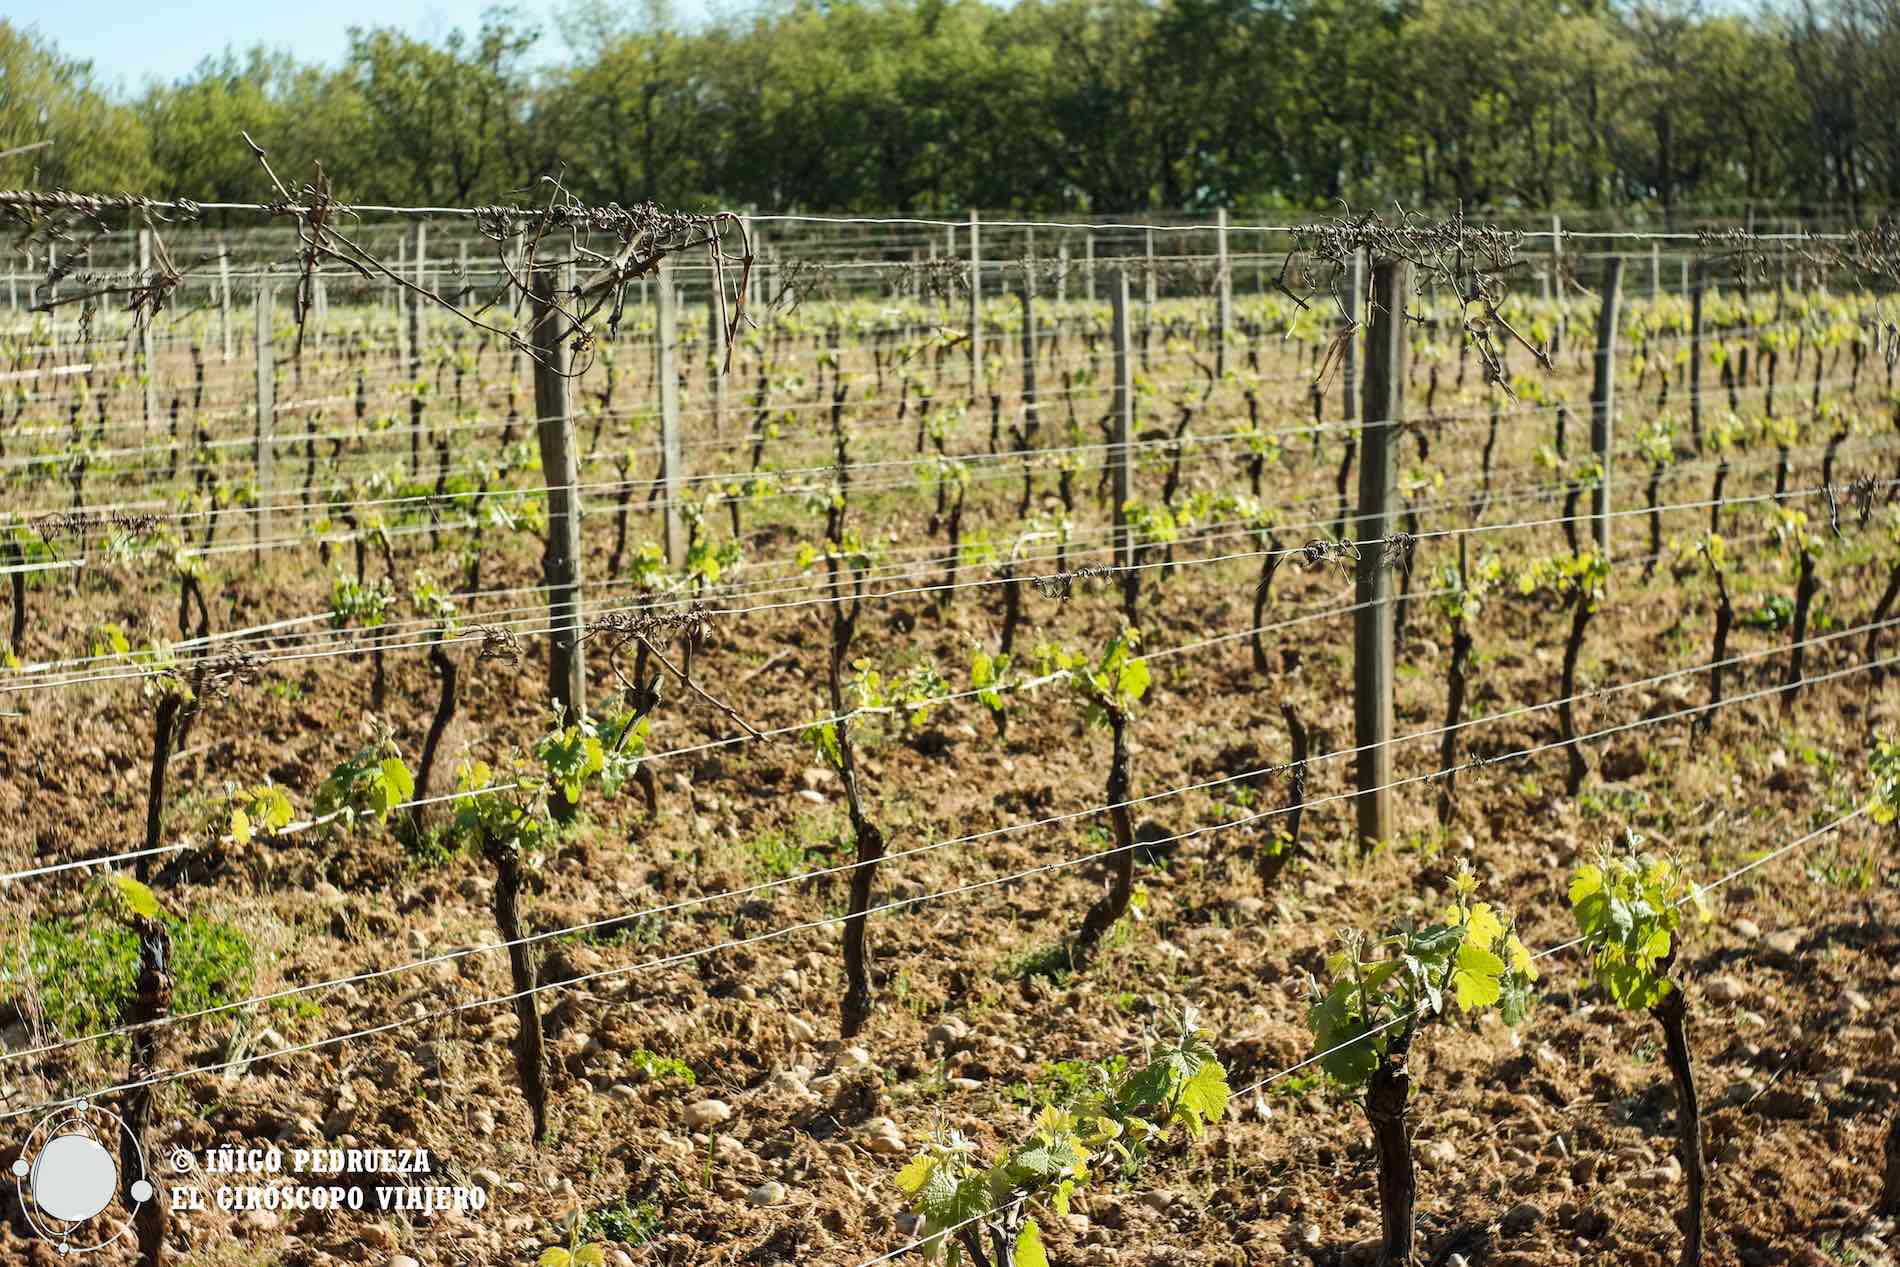 Bodegas de Fronton en Tarn-et-Garonne, el mundo del vino como paradoja